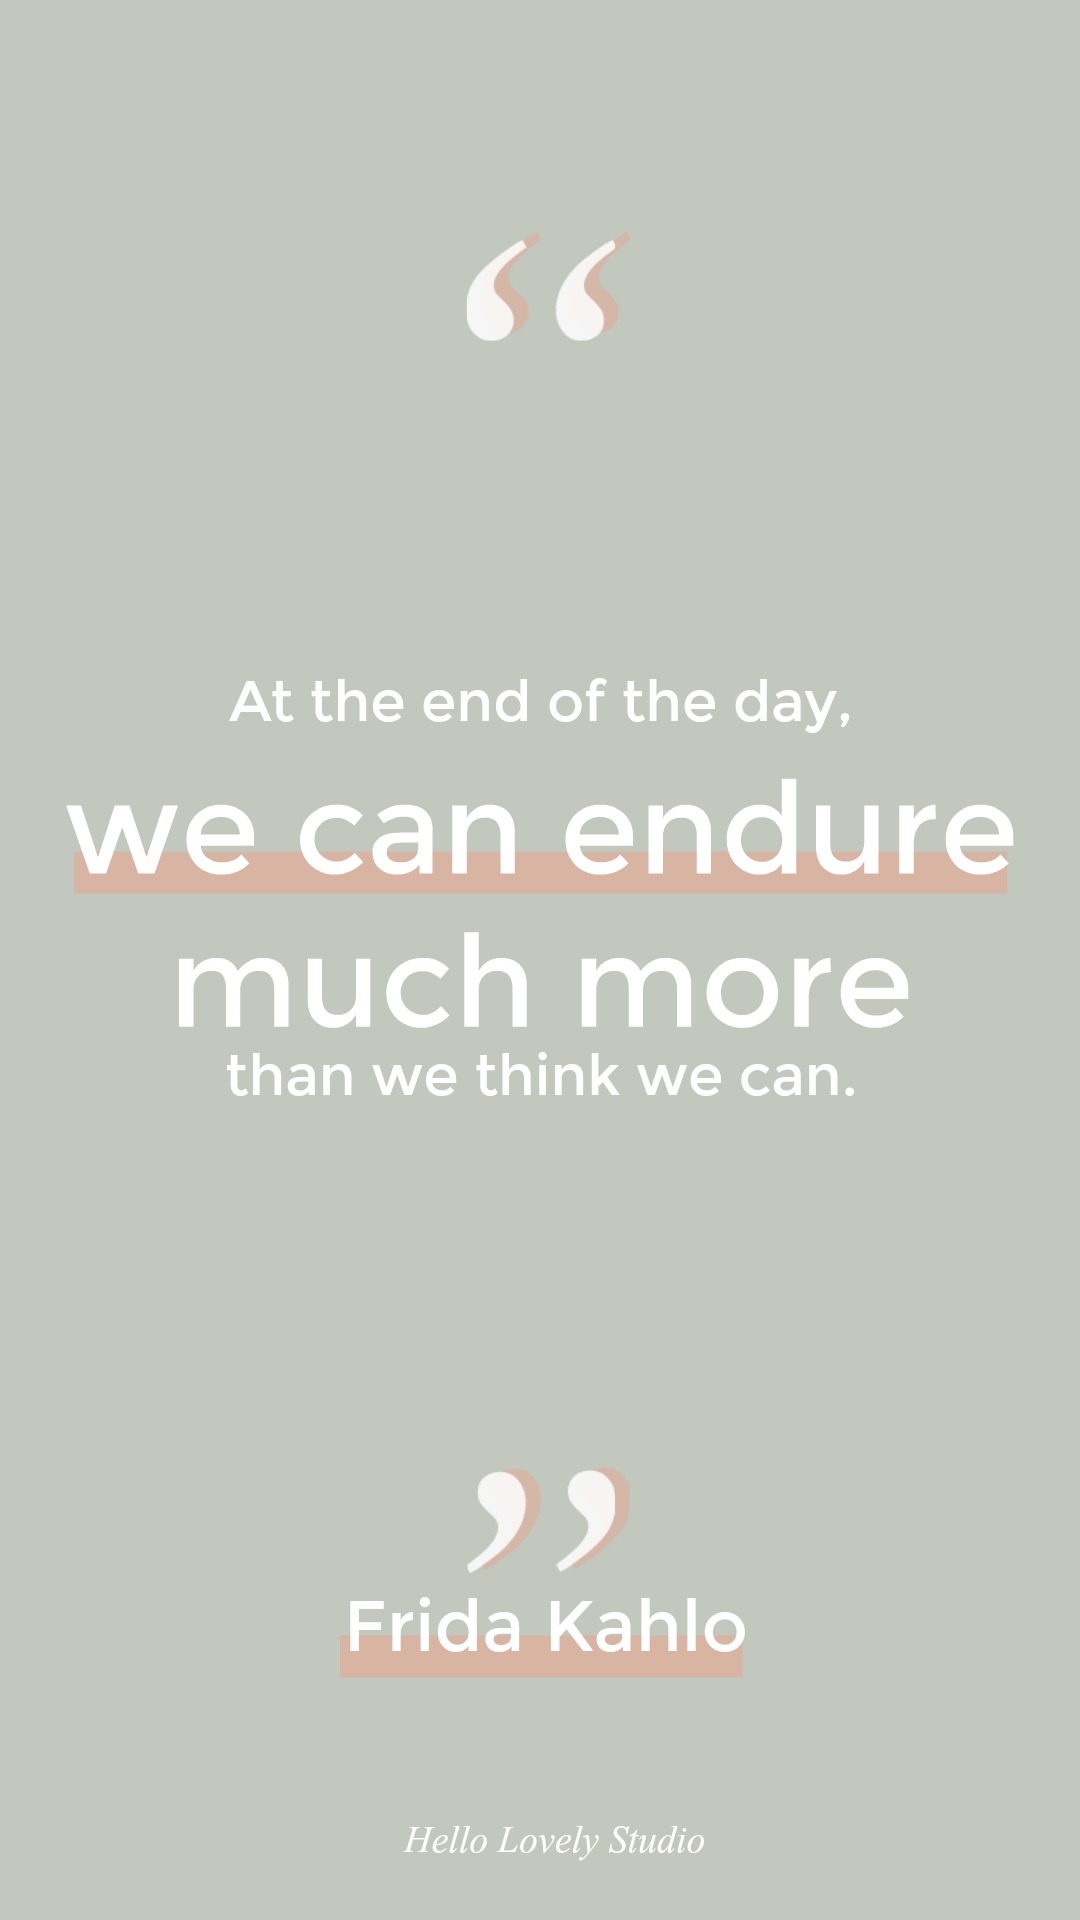 Frida Kahlo quote about endurance. #hellolovelystudio #quote #fridakahlo